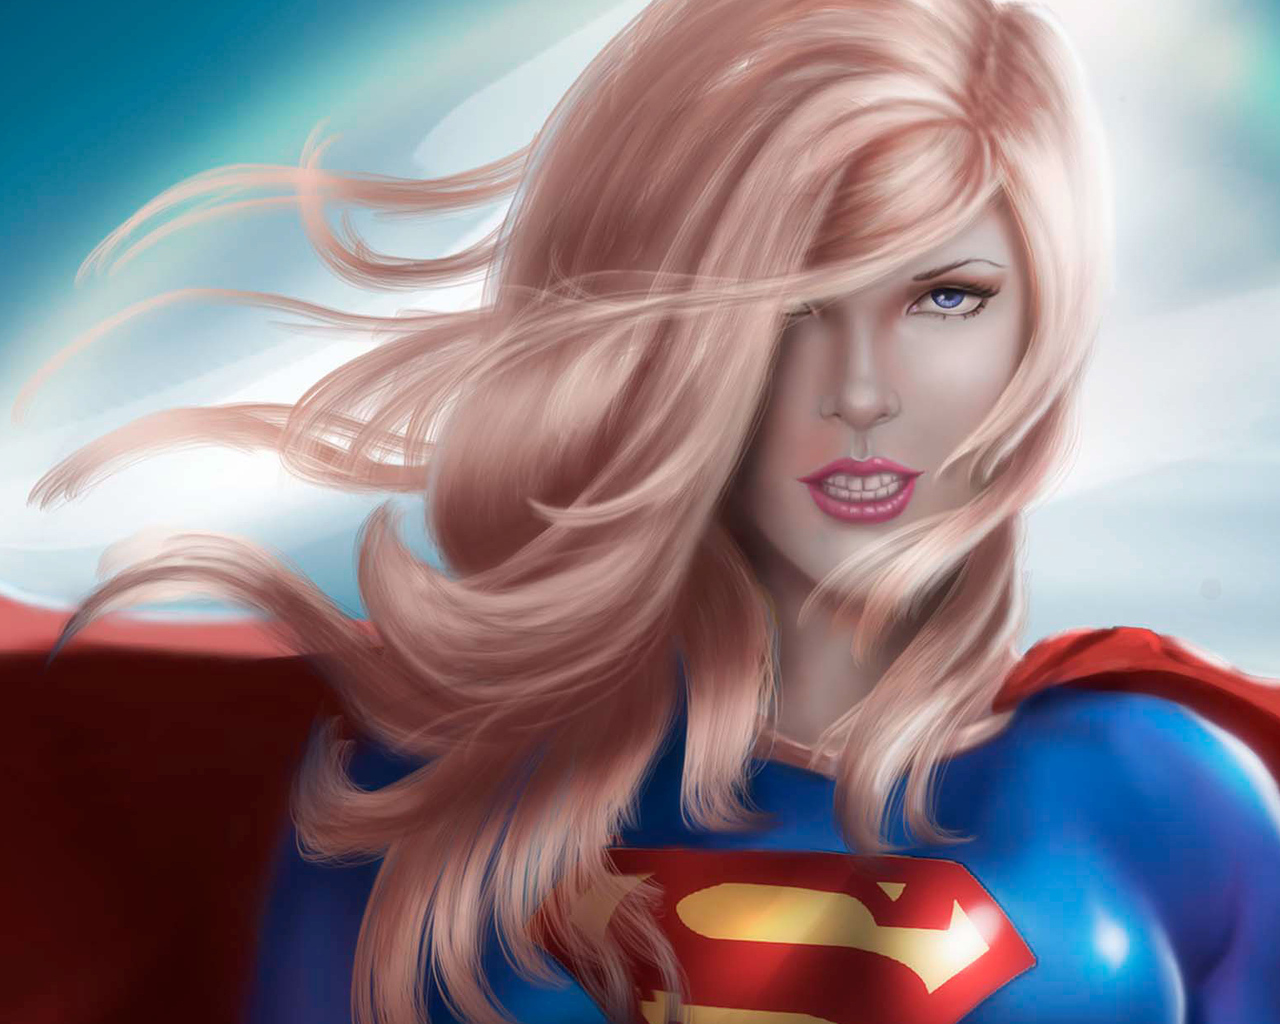 artwork-supergirl-cb.jpg